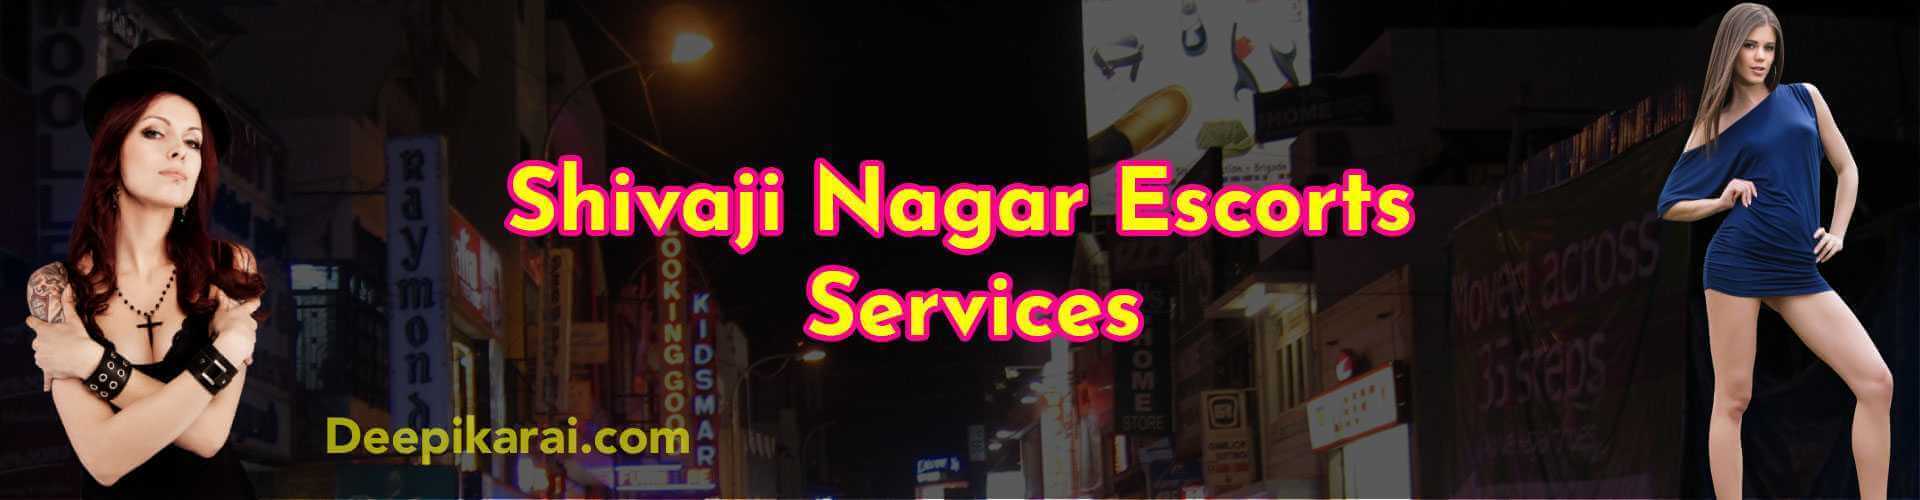 shivaji nagar escorts service